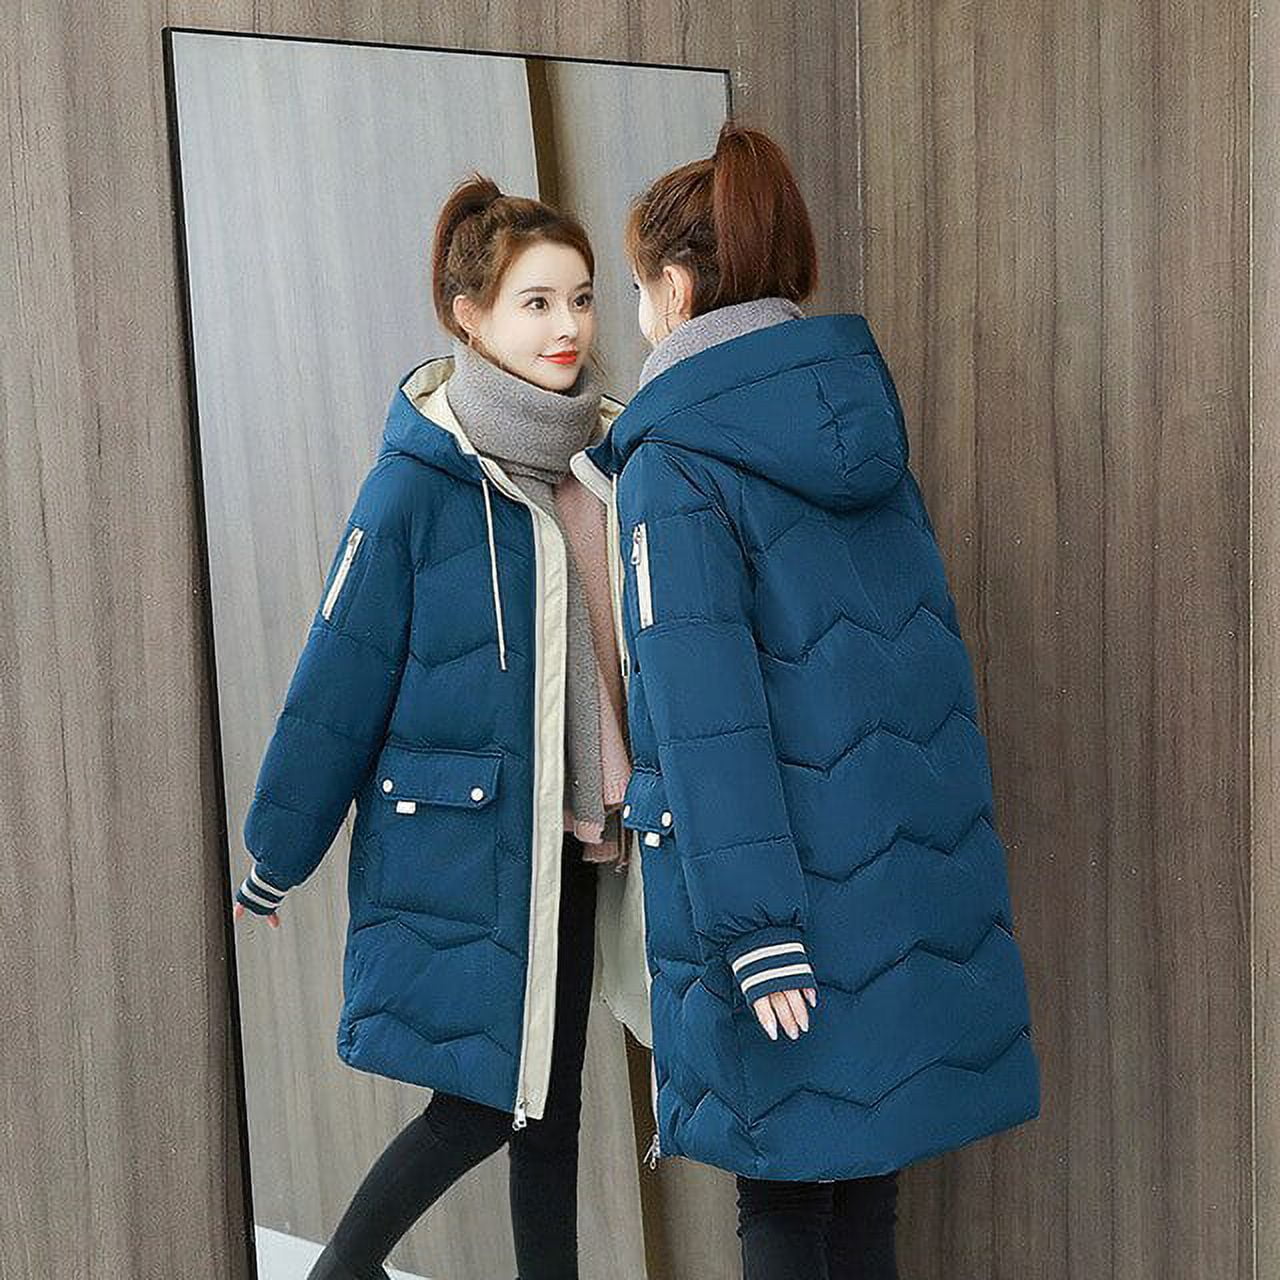 DanceeMangoo Winter Jacket Women Clothing Hooded Jackets Warm